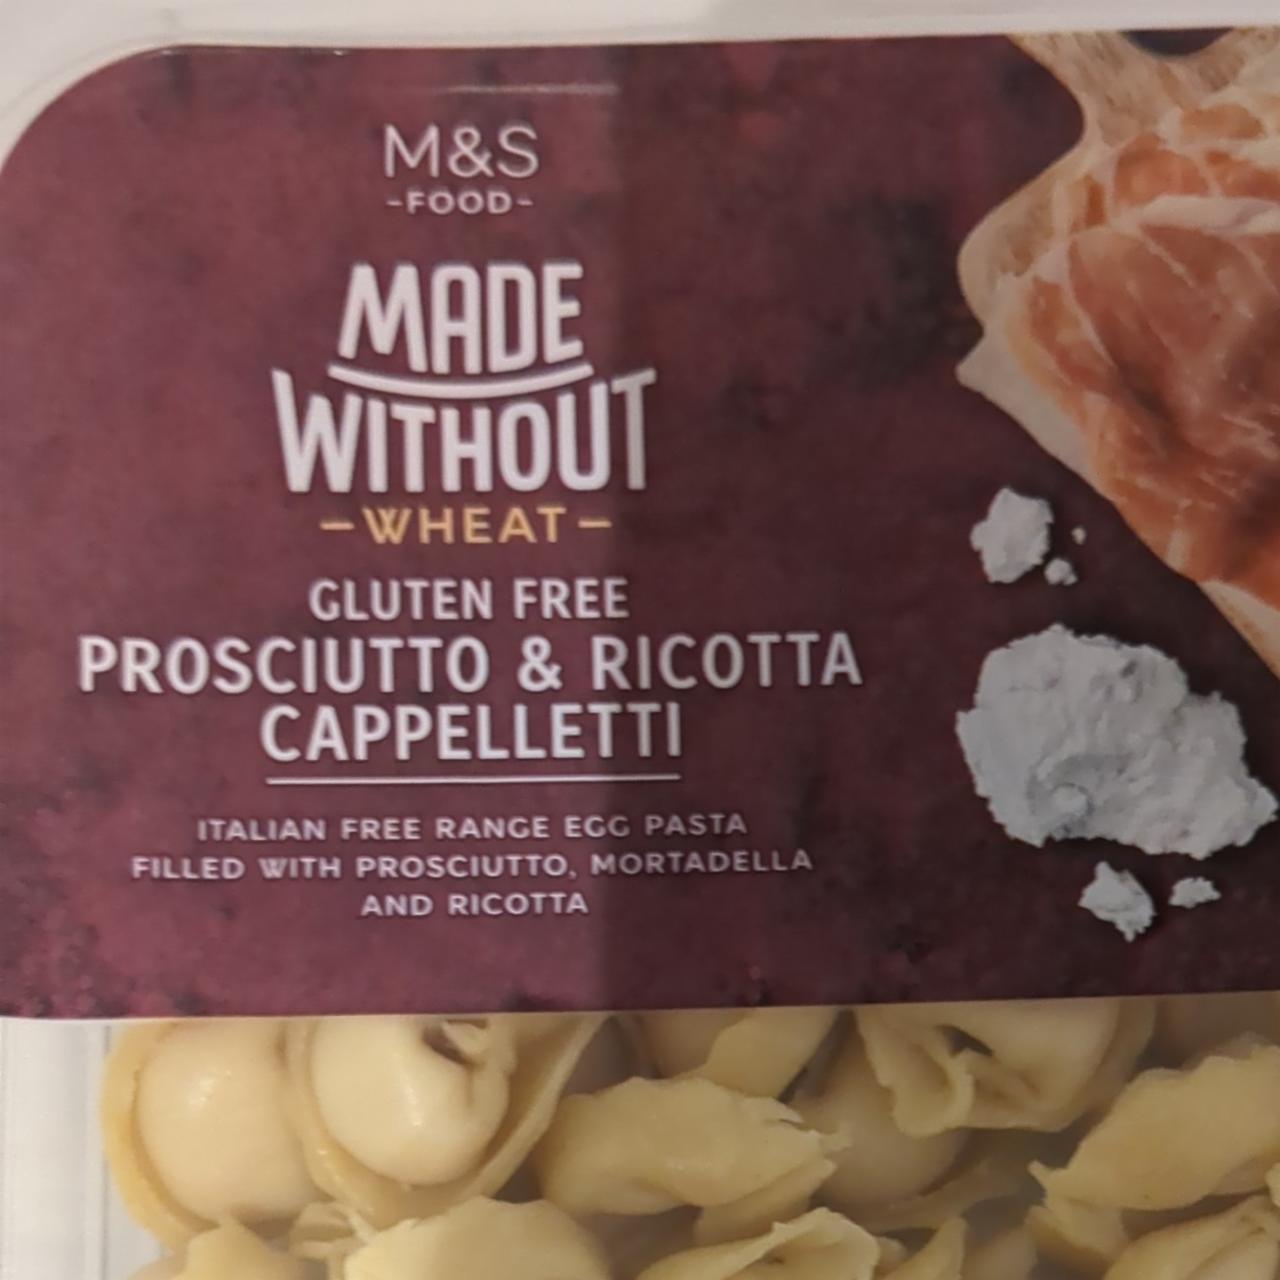 Fotografie - Gluten free prosciutto & ricotta cappelletti M&S Food